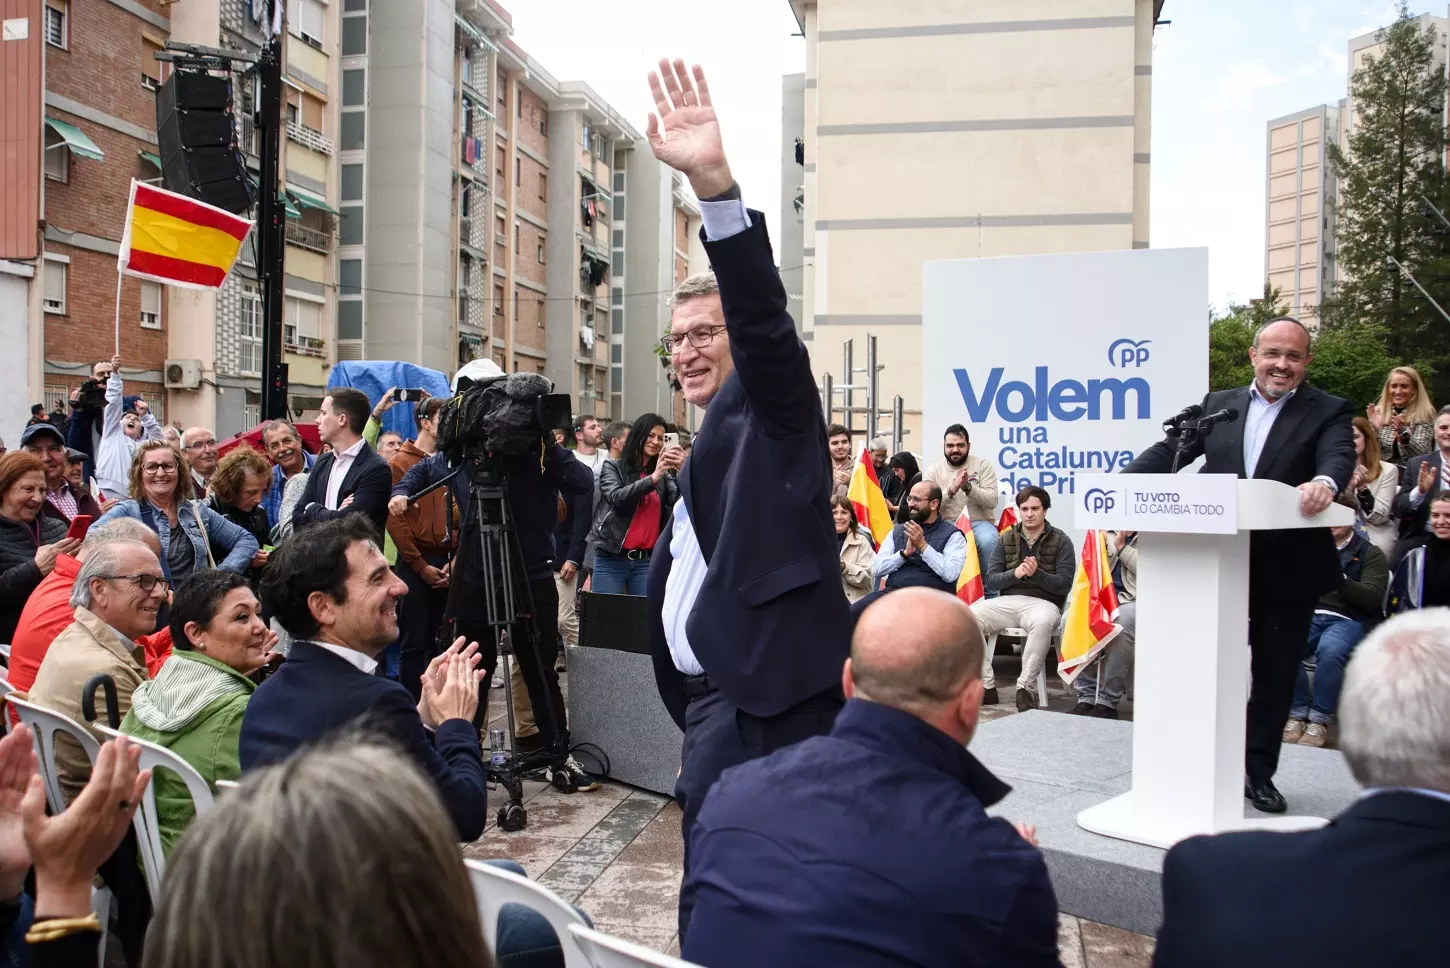 El presidente del PP, Alberto Núñez Feijóo, con su candidato en las elecciones catalanas, Alejandro Fernánde, en un mitin en Cornellà de Llobregat (Barcelona). — Alberto Paredes / Europa Press